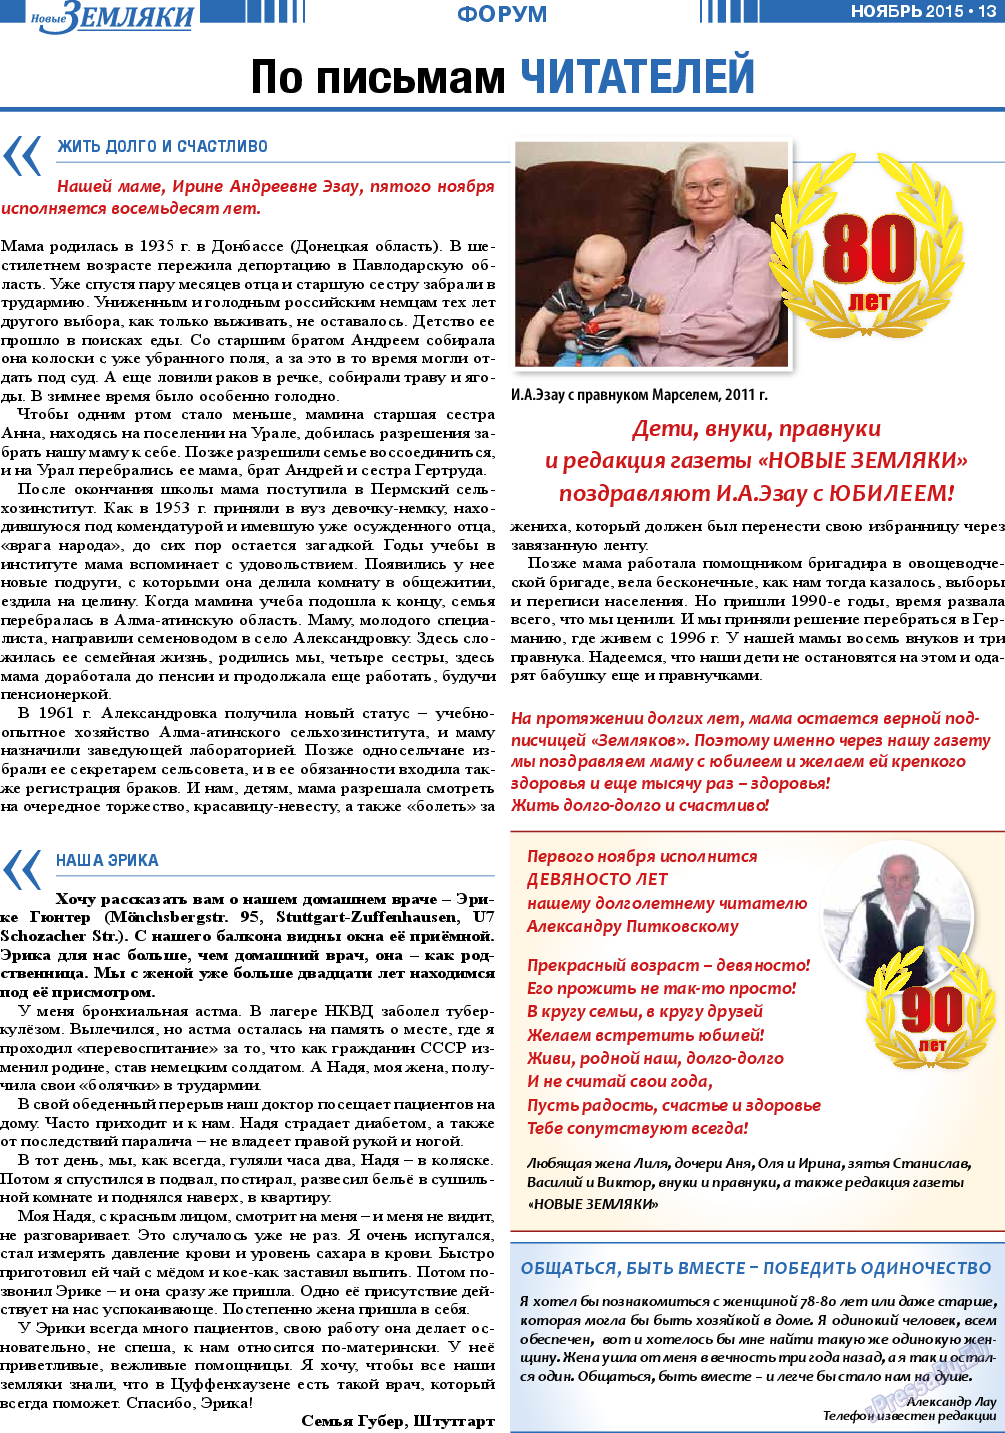 Новые Земляки, газета. 2015 №11 стр.13